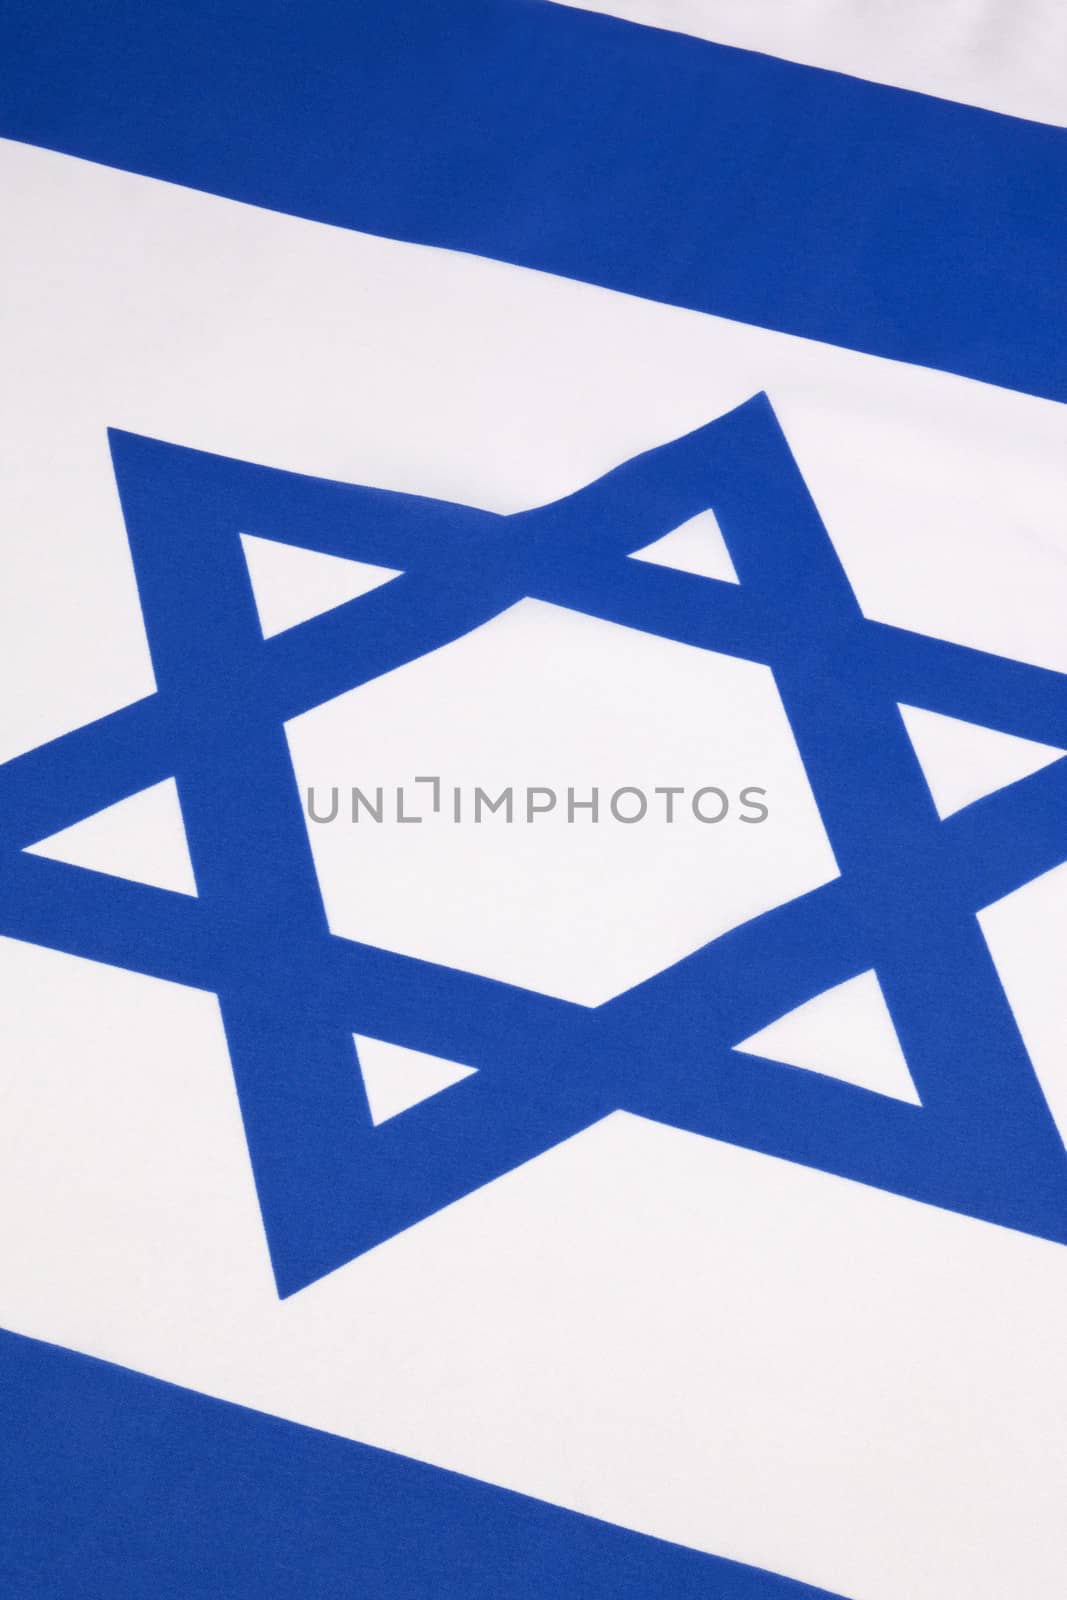 Star of David - Israel by SteveAllenPhoto